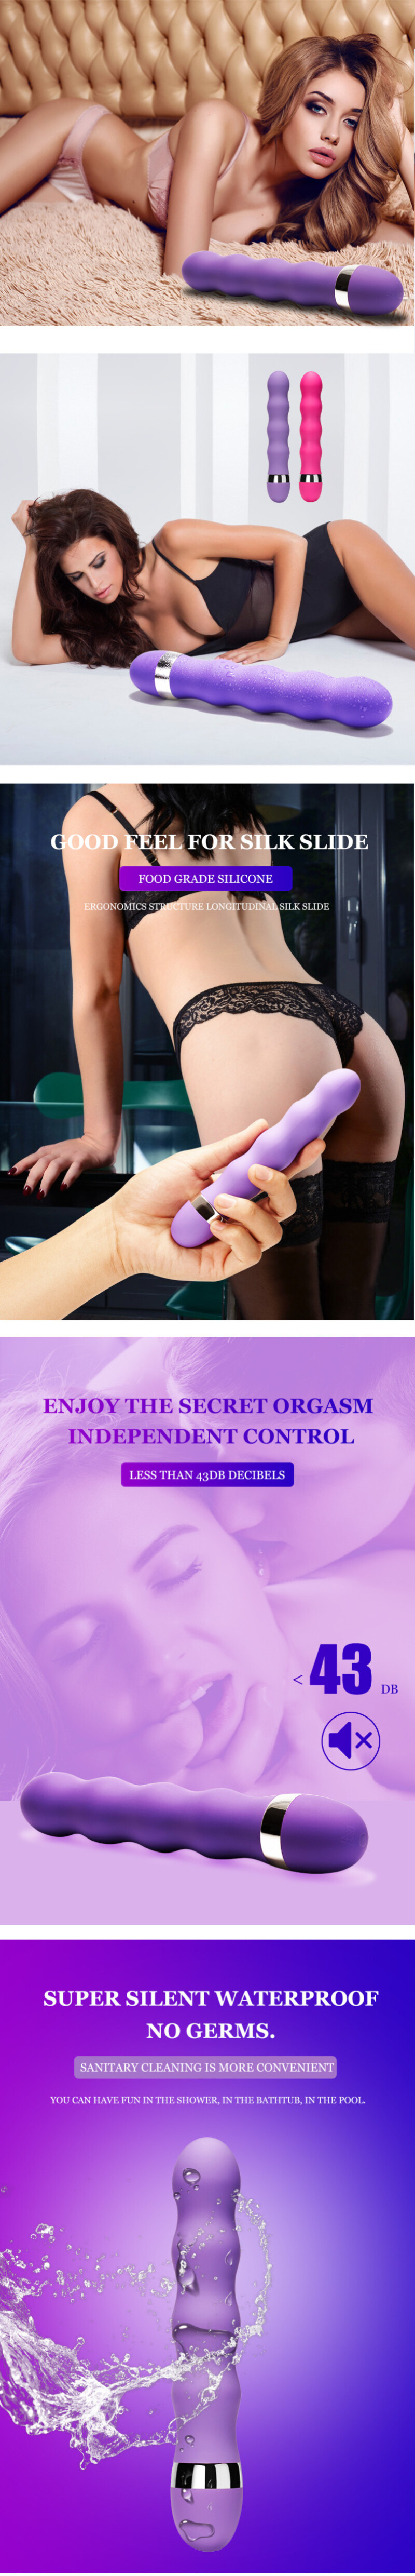 Houd Het Html-format Als Dat Mogelijk Is: Multi-speed G-spot Vagina Vibrator Clit Butt Plug Anal Porn Sex Masturbation Toy